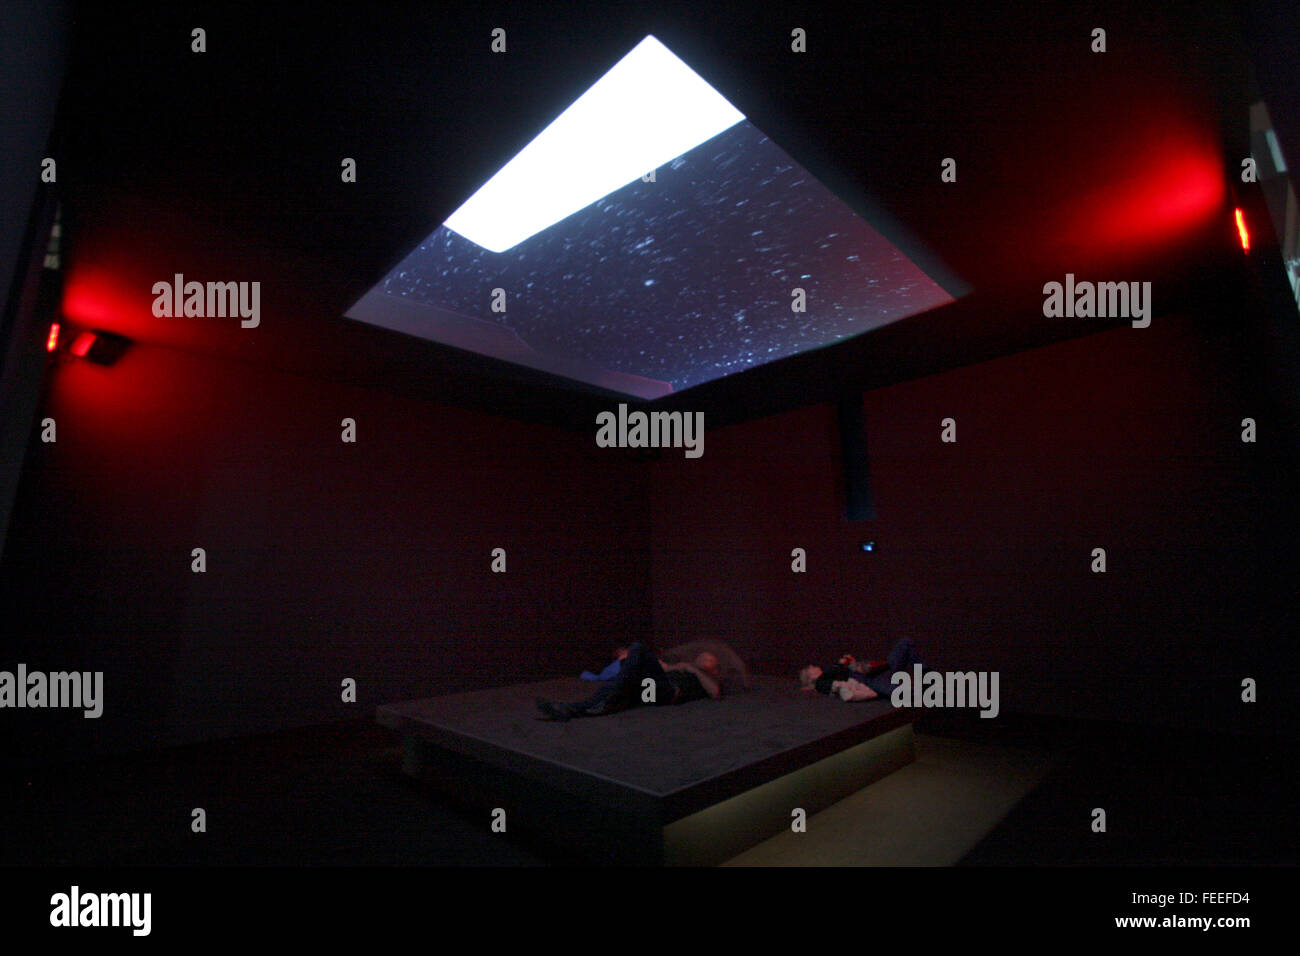 Astro rumore, il primo da solista presentano per artista Laura Poitras al Whitney Museum of American Art Foto Stock